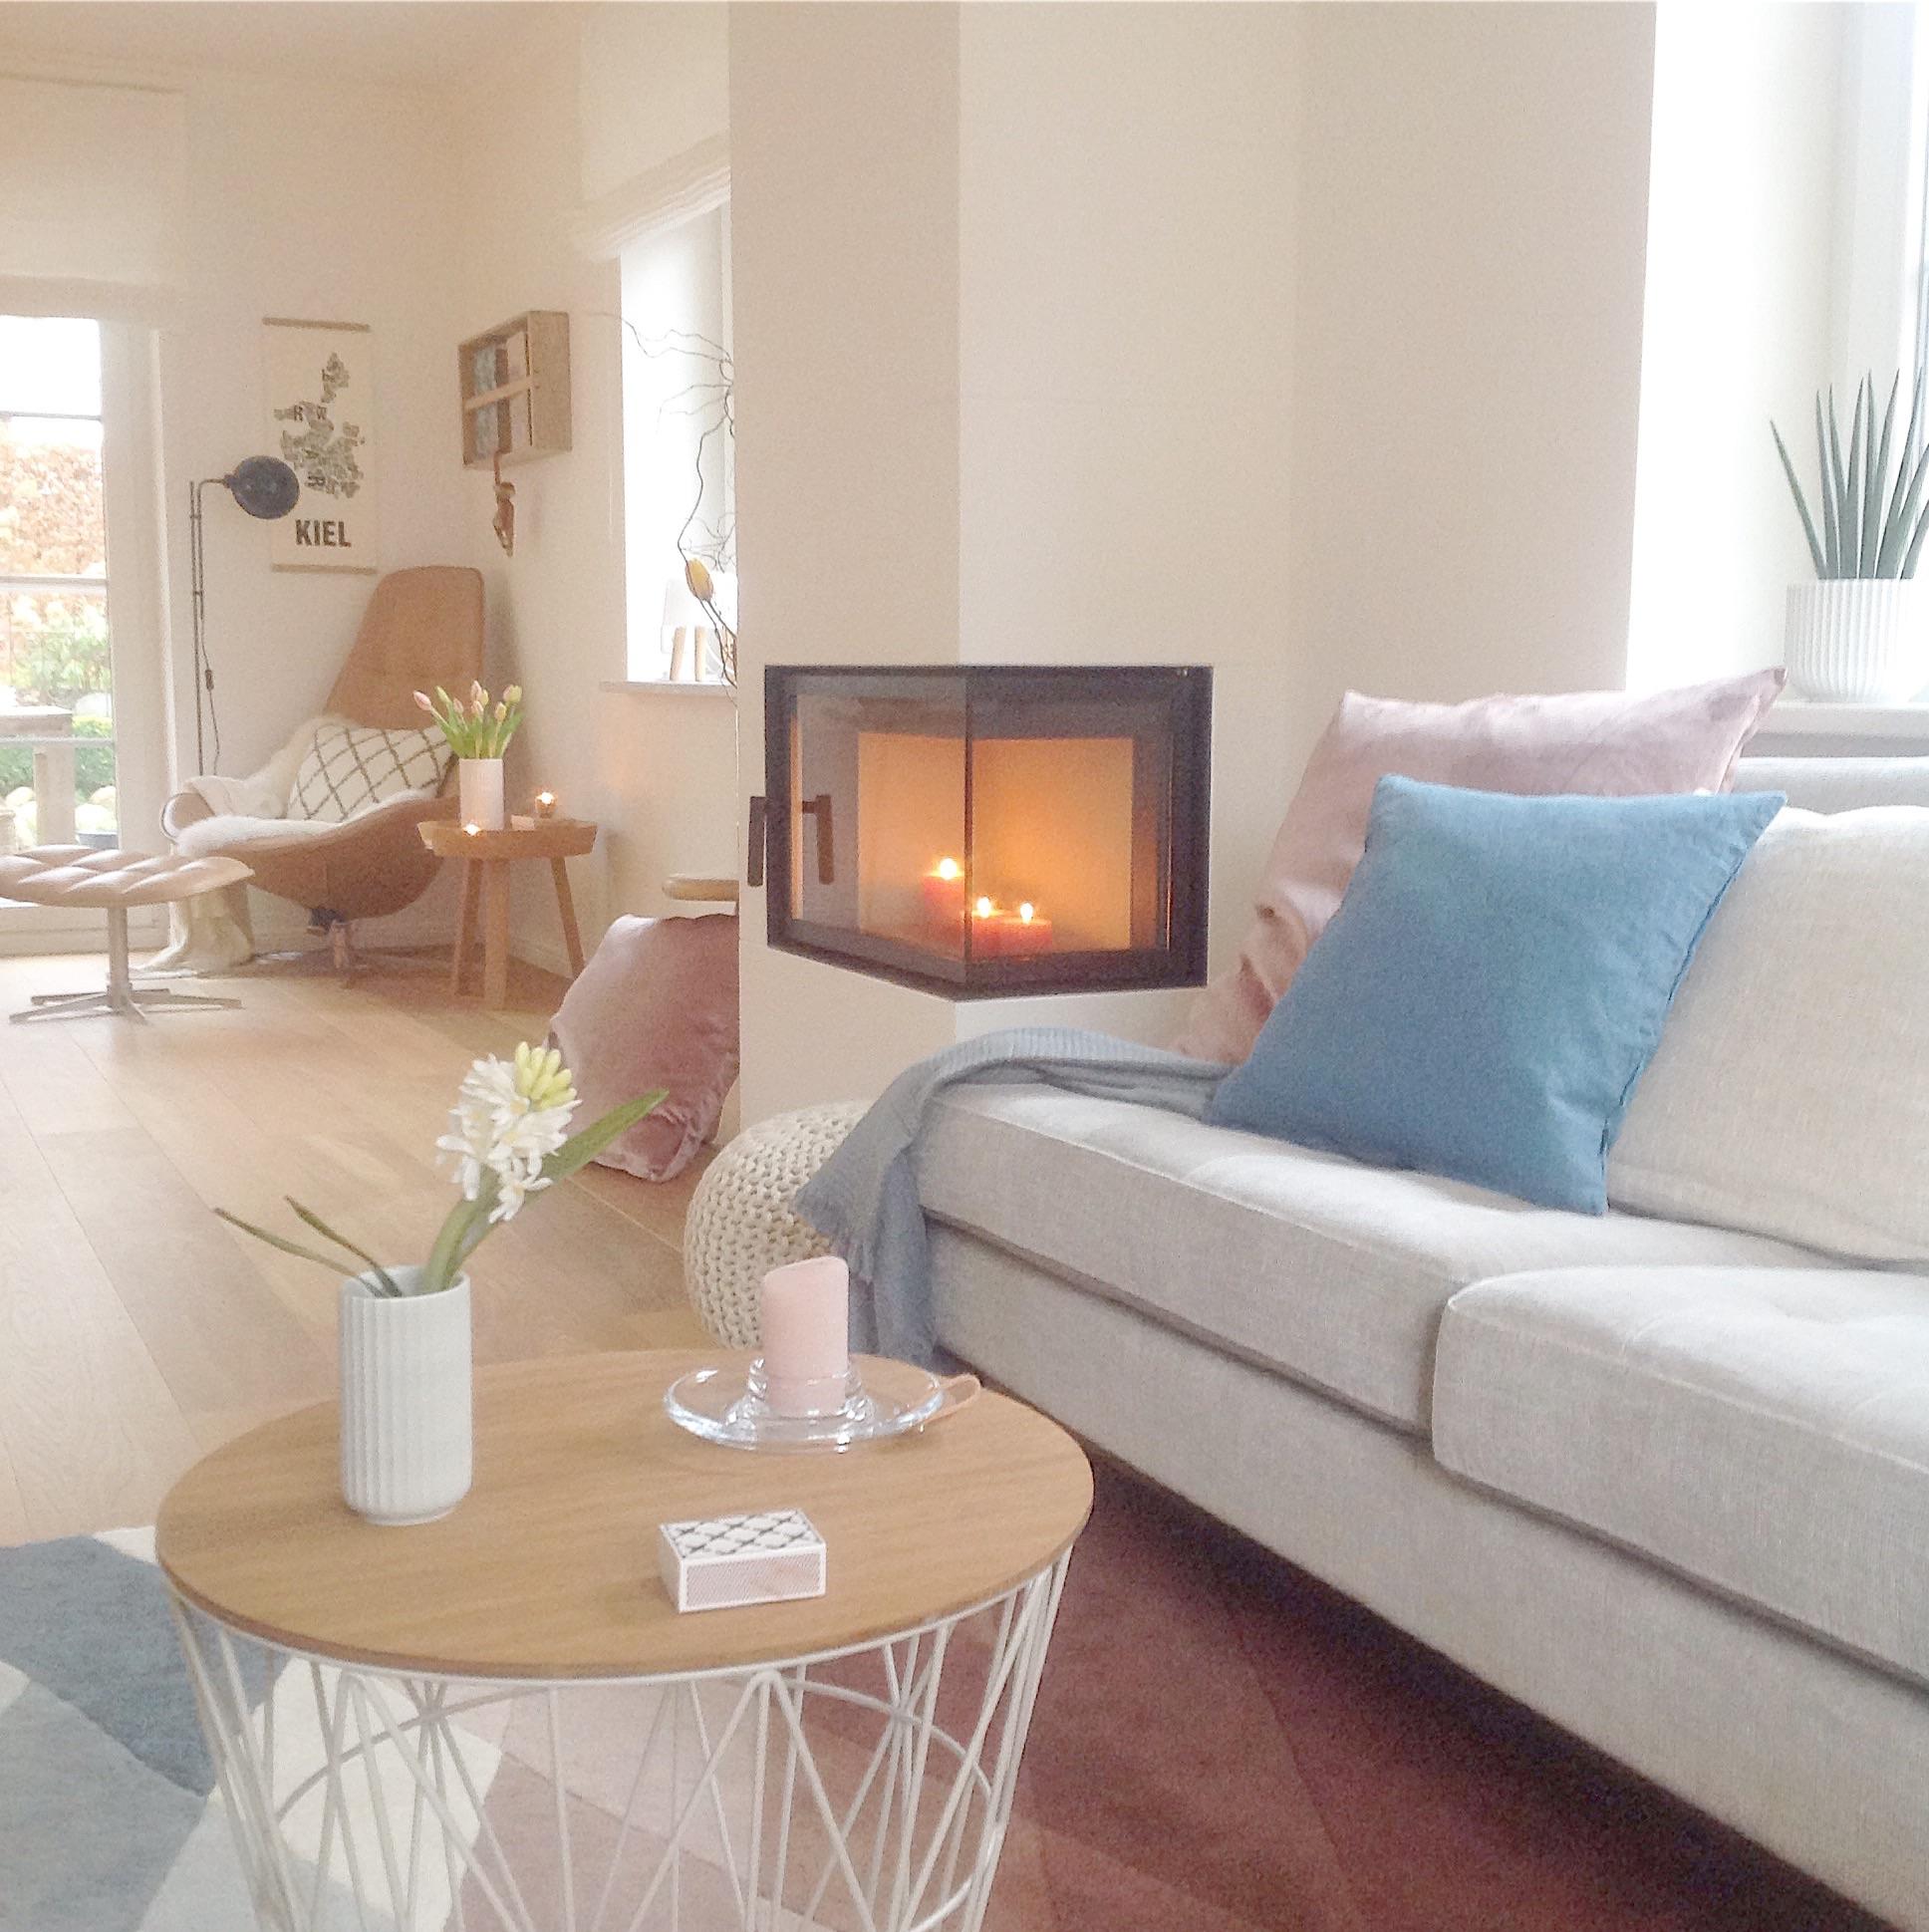 Veränderung im Wohnzimmer...... der Ofen☺️ # Skandinavisch #weiss # interior #living # Hygge 